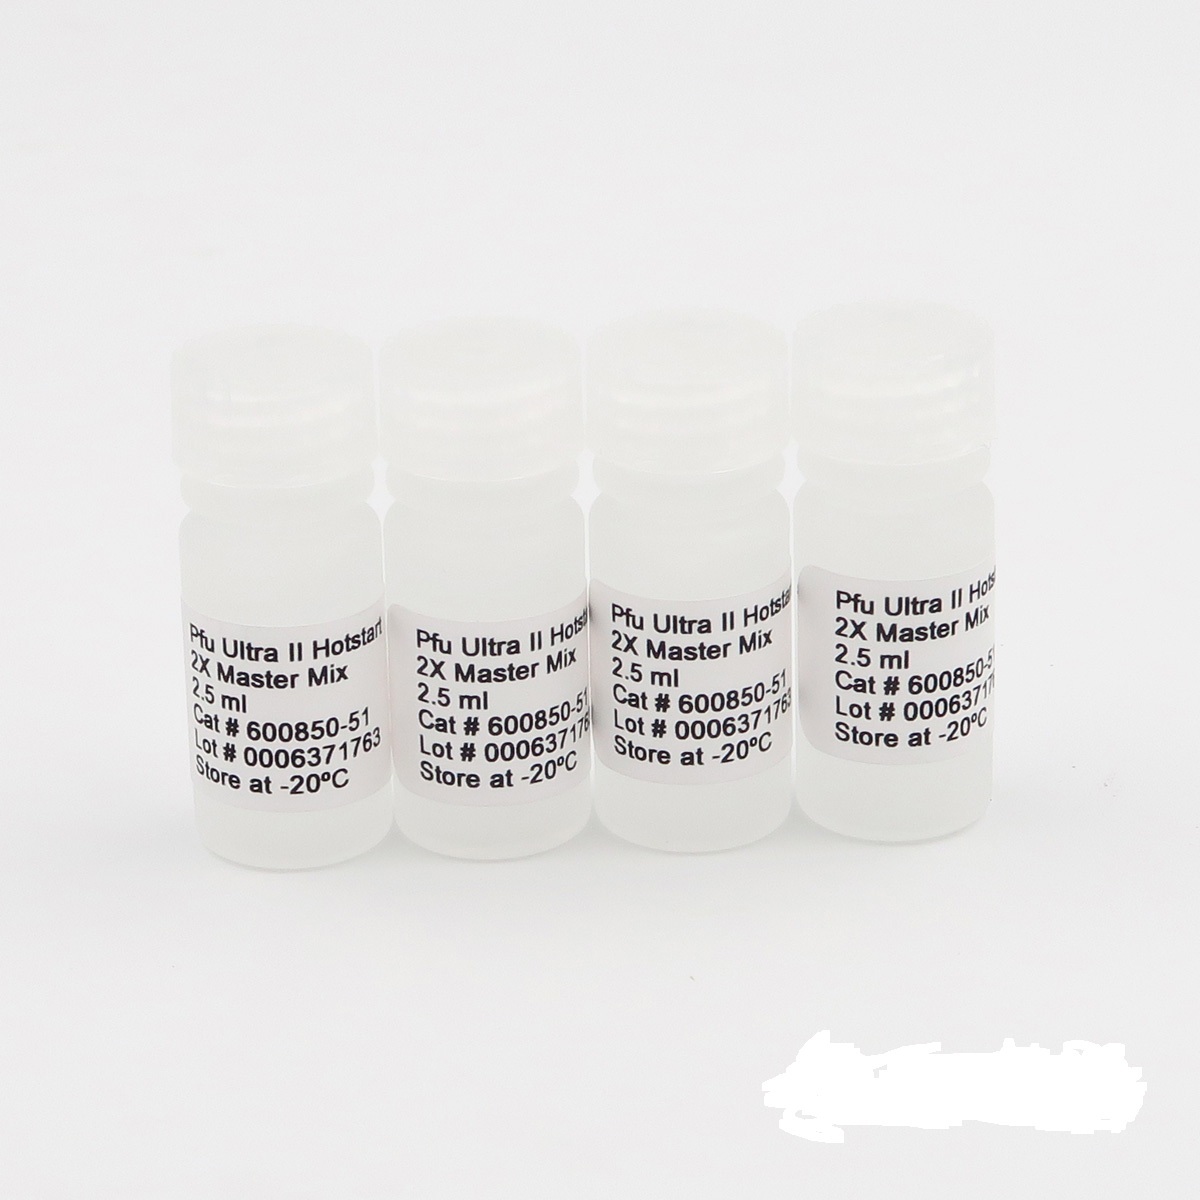 圣保罗沙门氏菌染料法荧光定量PCR试剂盒